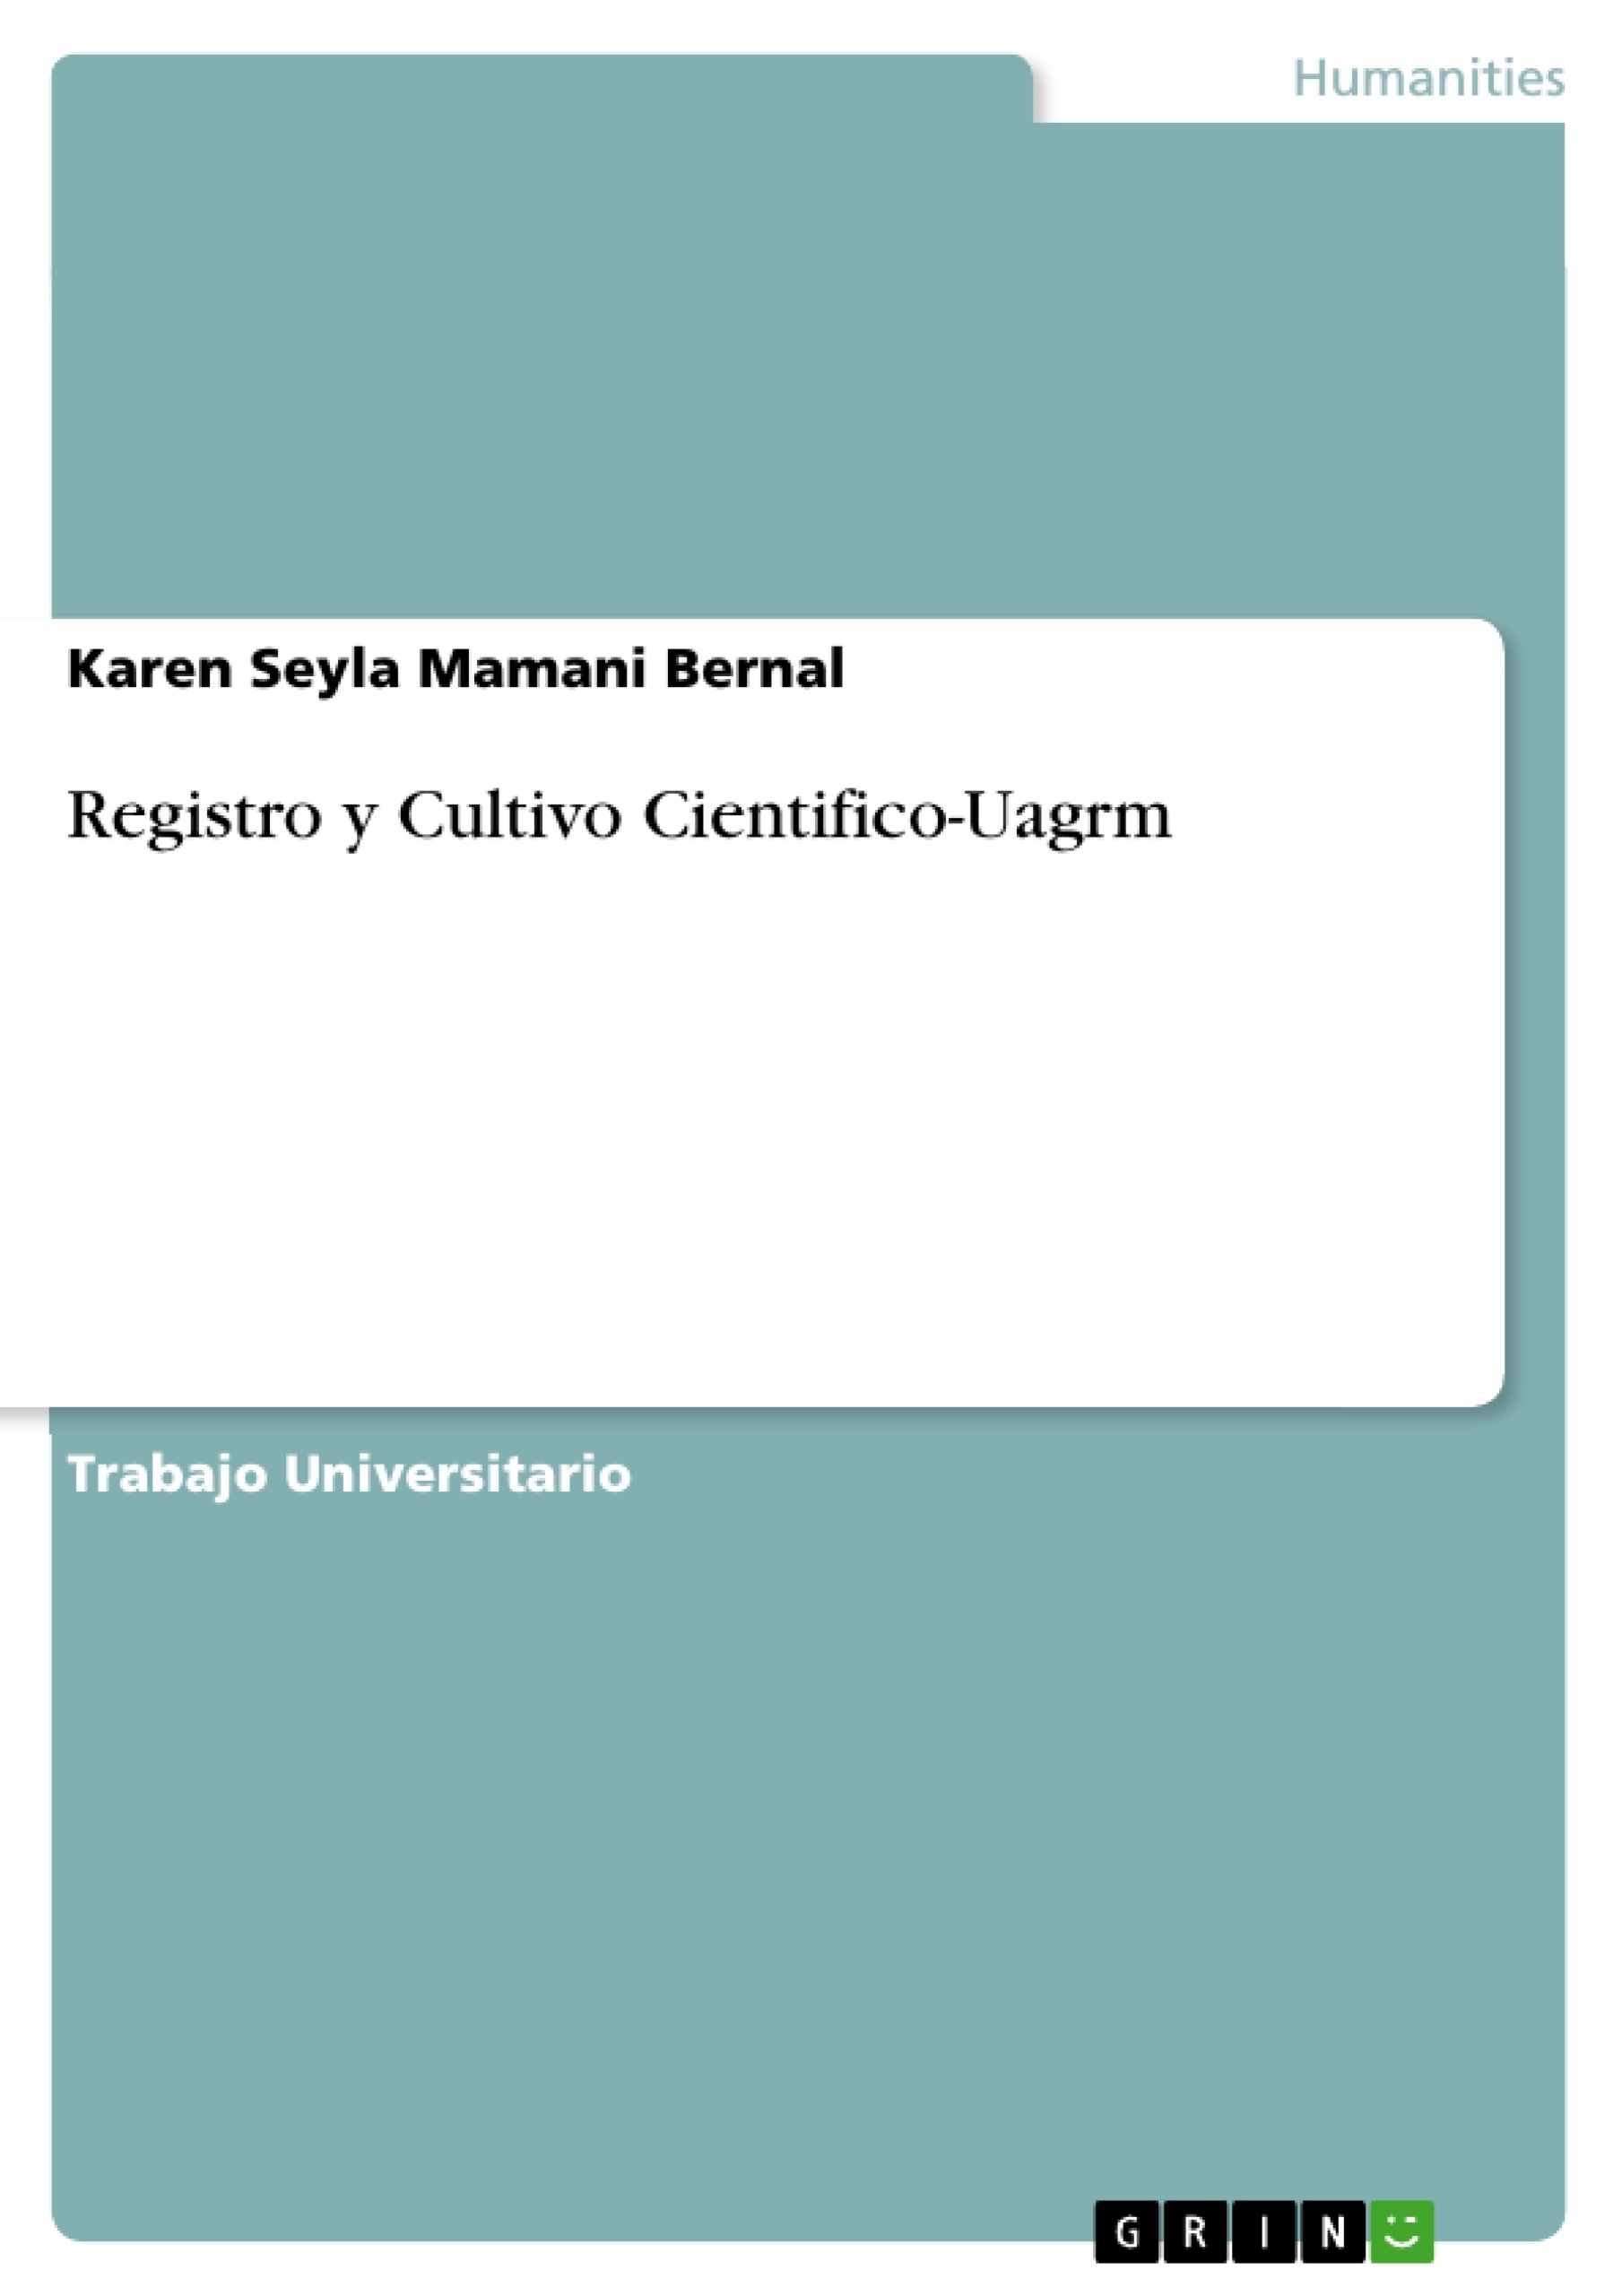 Title: Registro y Cultivo Cientifico-Uagrm